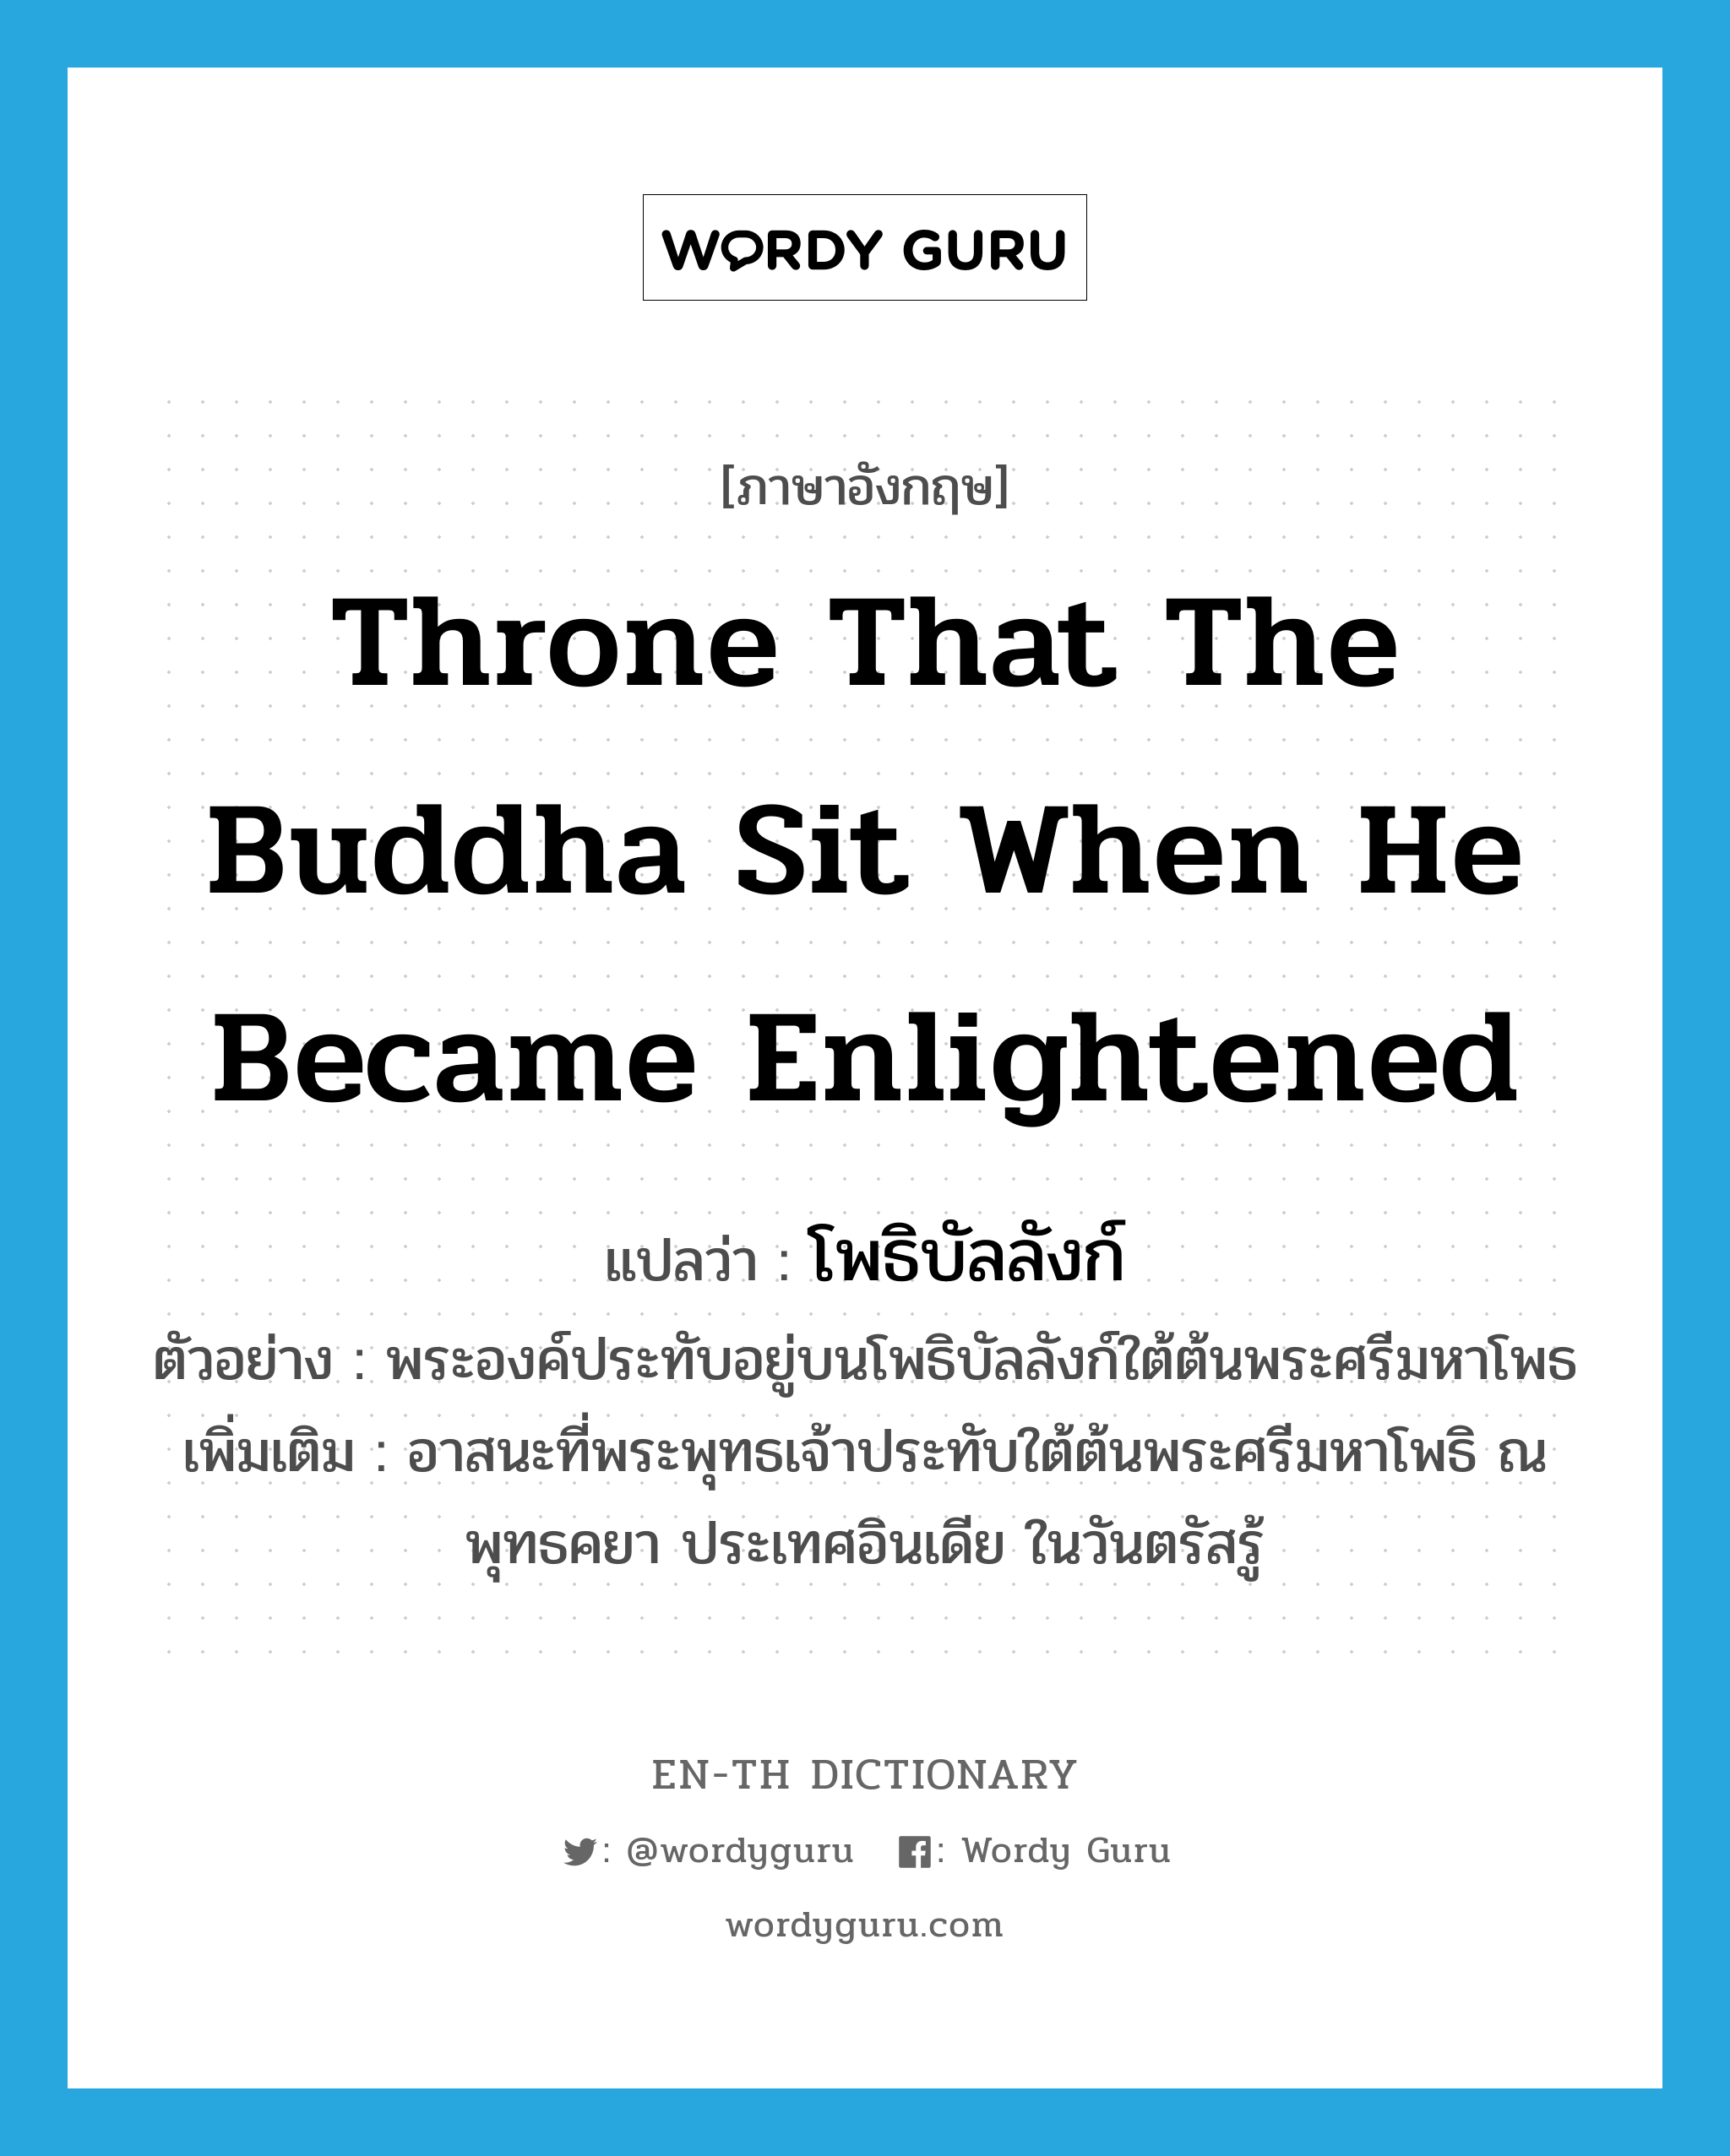 โพธิบัลลังก์ ภาษาอังกฤษ?, คำศัพท์ภาษาอังกฤษ โพธิบัลลังก์ แปลว่า throne that the Buddha sit when he became enlightened ประเภท N ตัวอย่าง พระองค์ประทับอยู่บนโพธิบัลลังก์ใต้ต้นพระศรีมหาโพธ เพิ่มเติม อาสนะที่พระพุทธเจ้าประทับใต้ต้นพระศรีมหาโพธิ ณ พุทธคยา ประเทศอินเดีย ในวันตรัสรู้ หมวด N